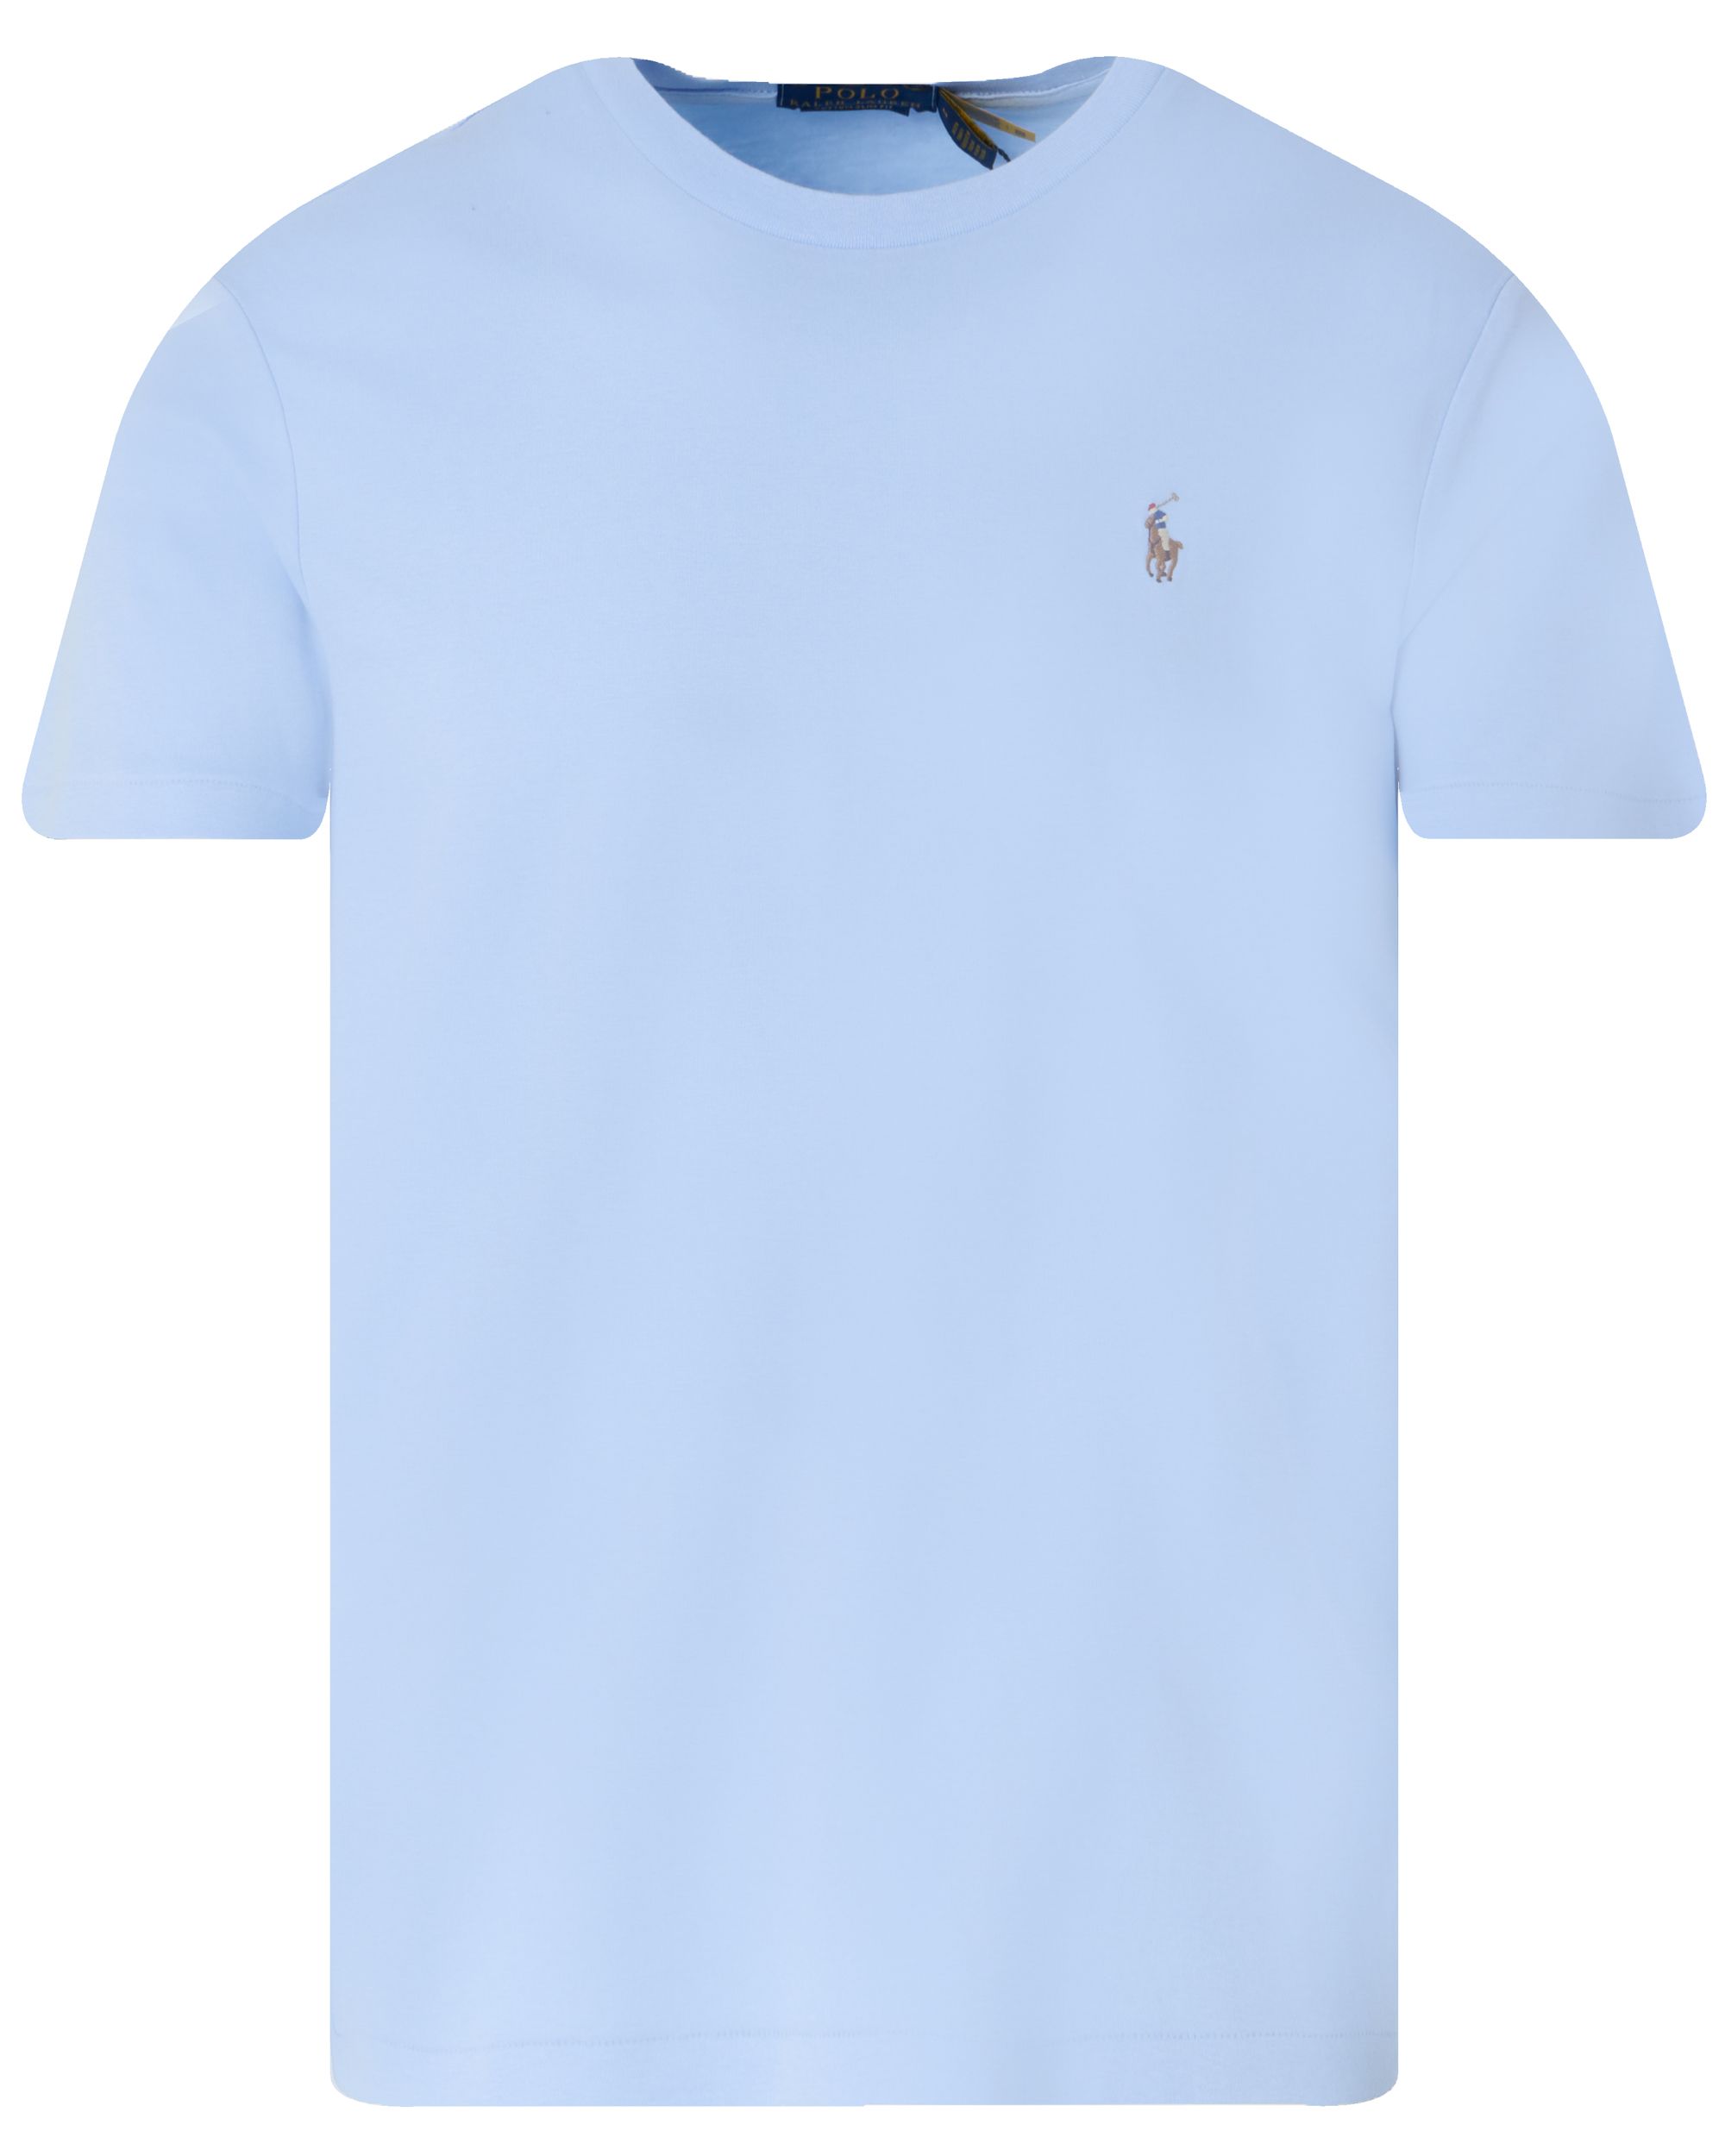 Polo Ralph Lauren T-shirt KM Blauw 095290-001-L